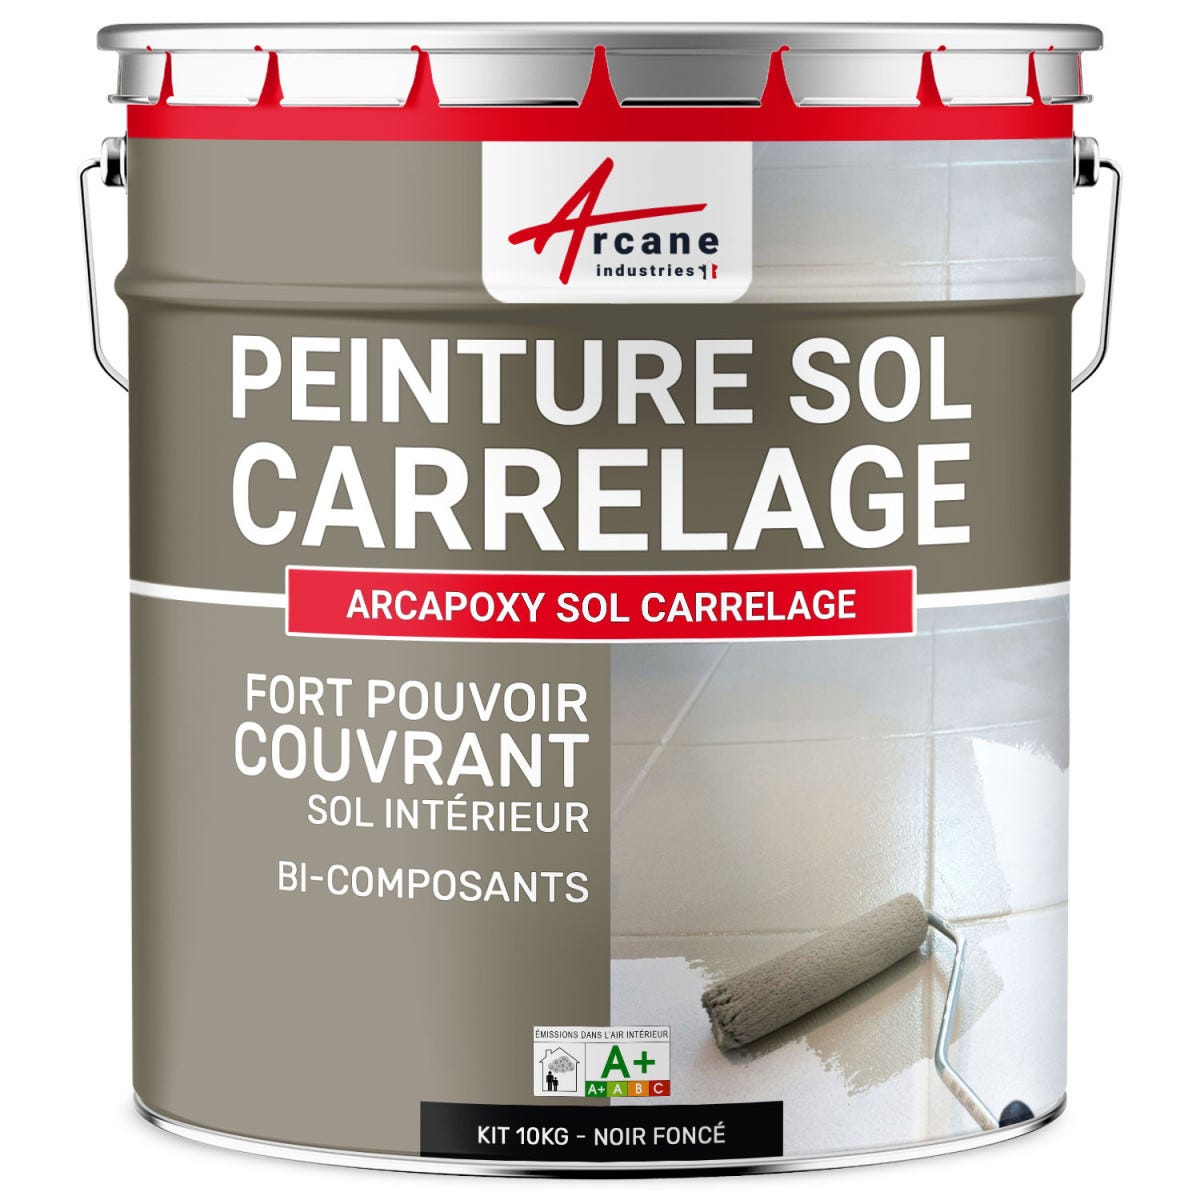 Peinture Résine Sol Carrelage - ARCAPOXY SOL CARRELAGE - 10 kg (jusqu'à 50 m² en 2 couches) - Noir foncé - RAL 9005 - ARCANE INDUSTRIES 0